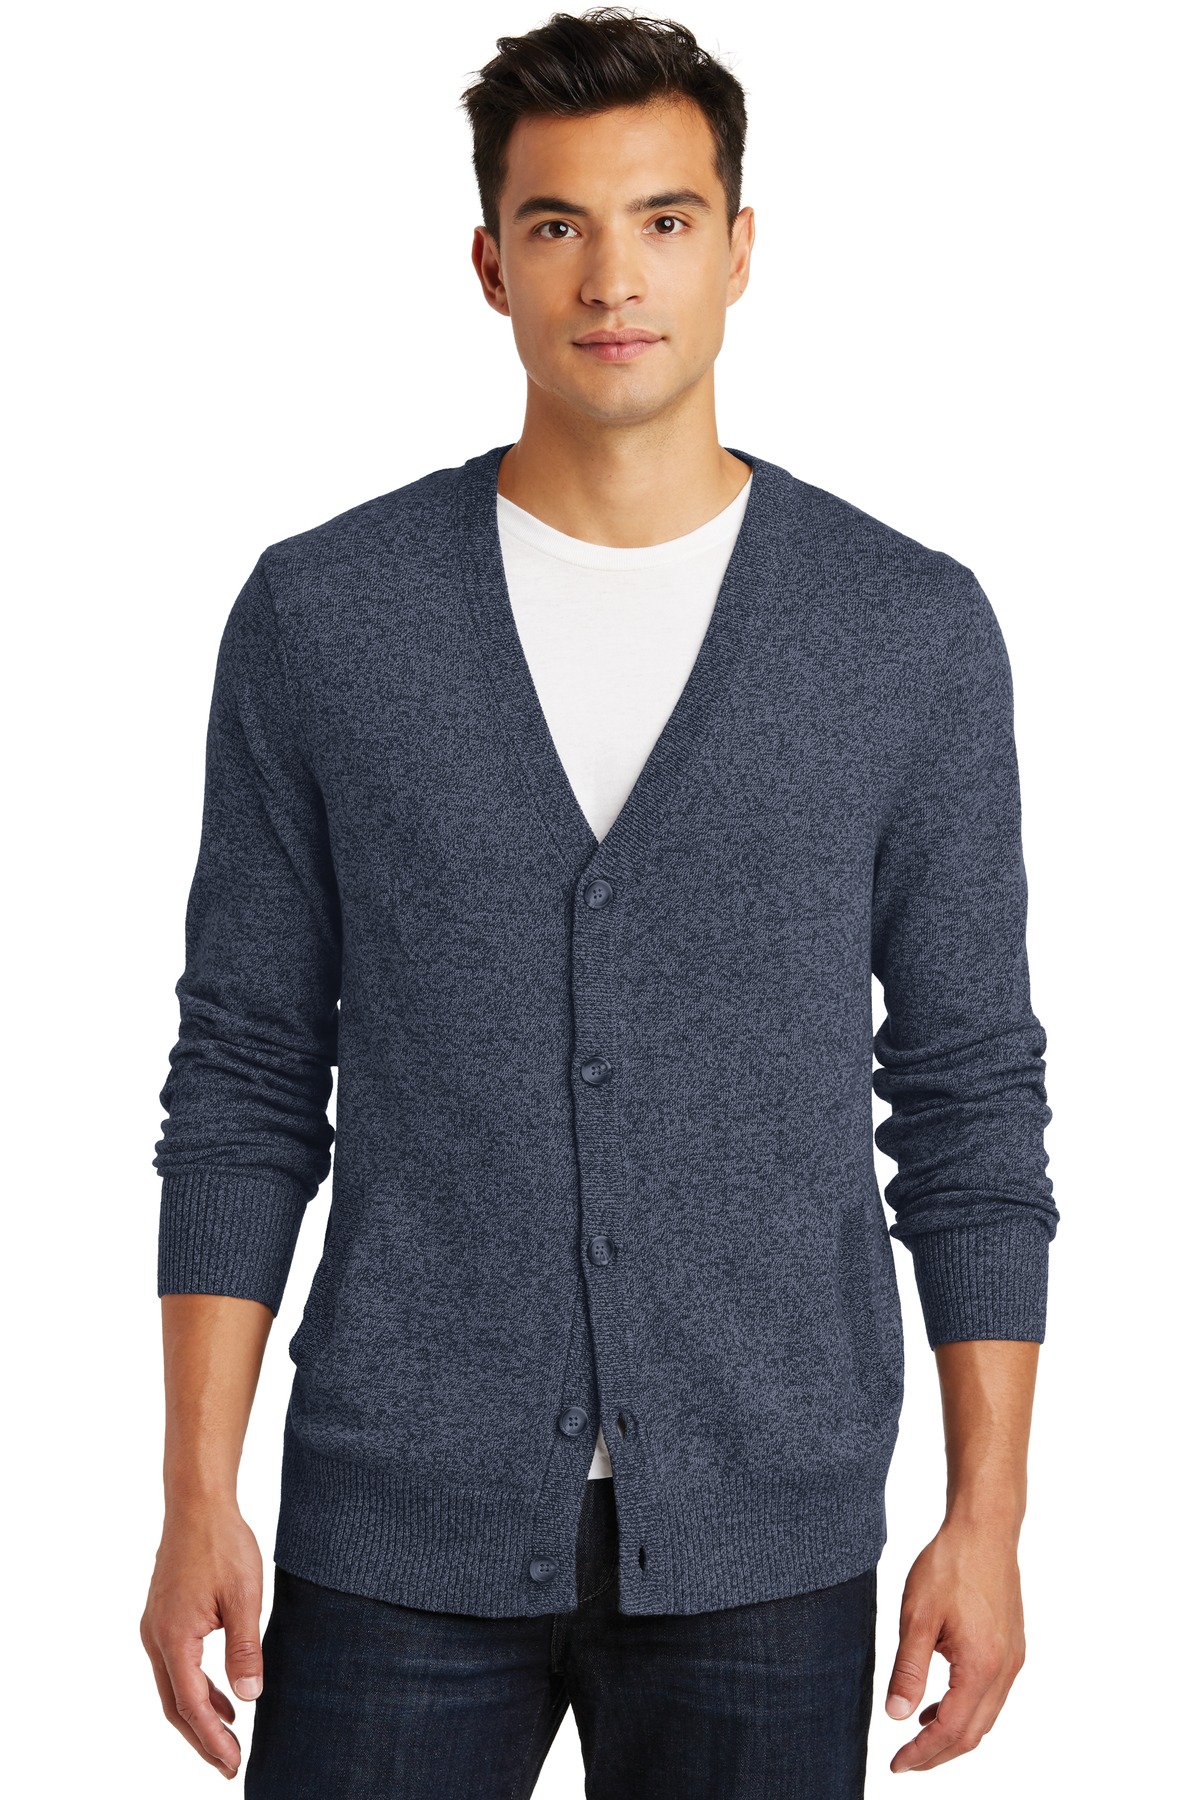 District Made Men's Long Sleeve Welt Pockets Sweater DM315